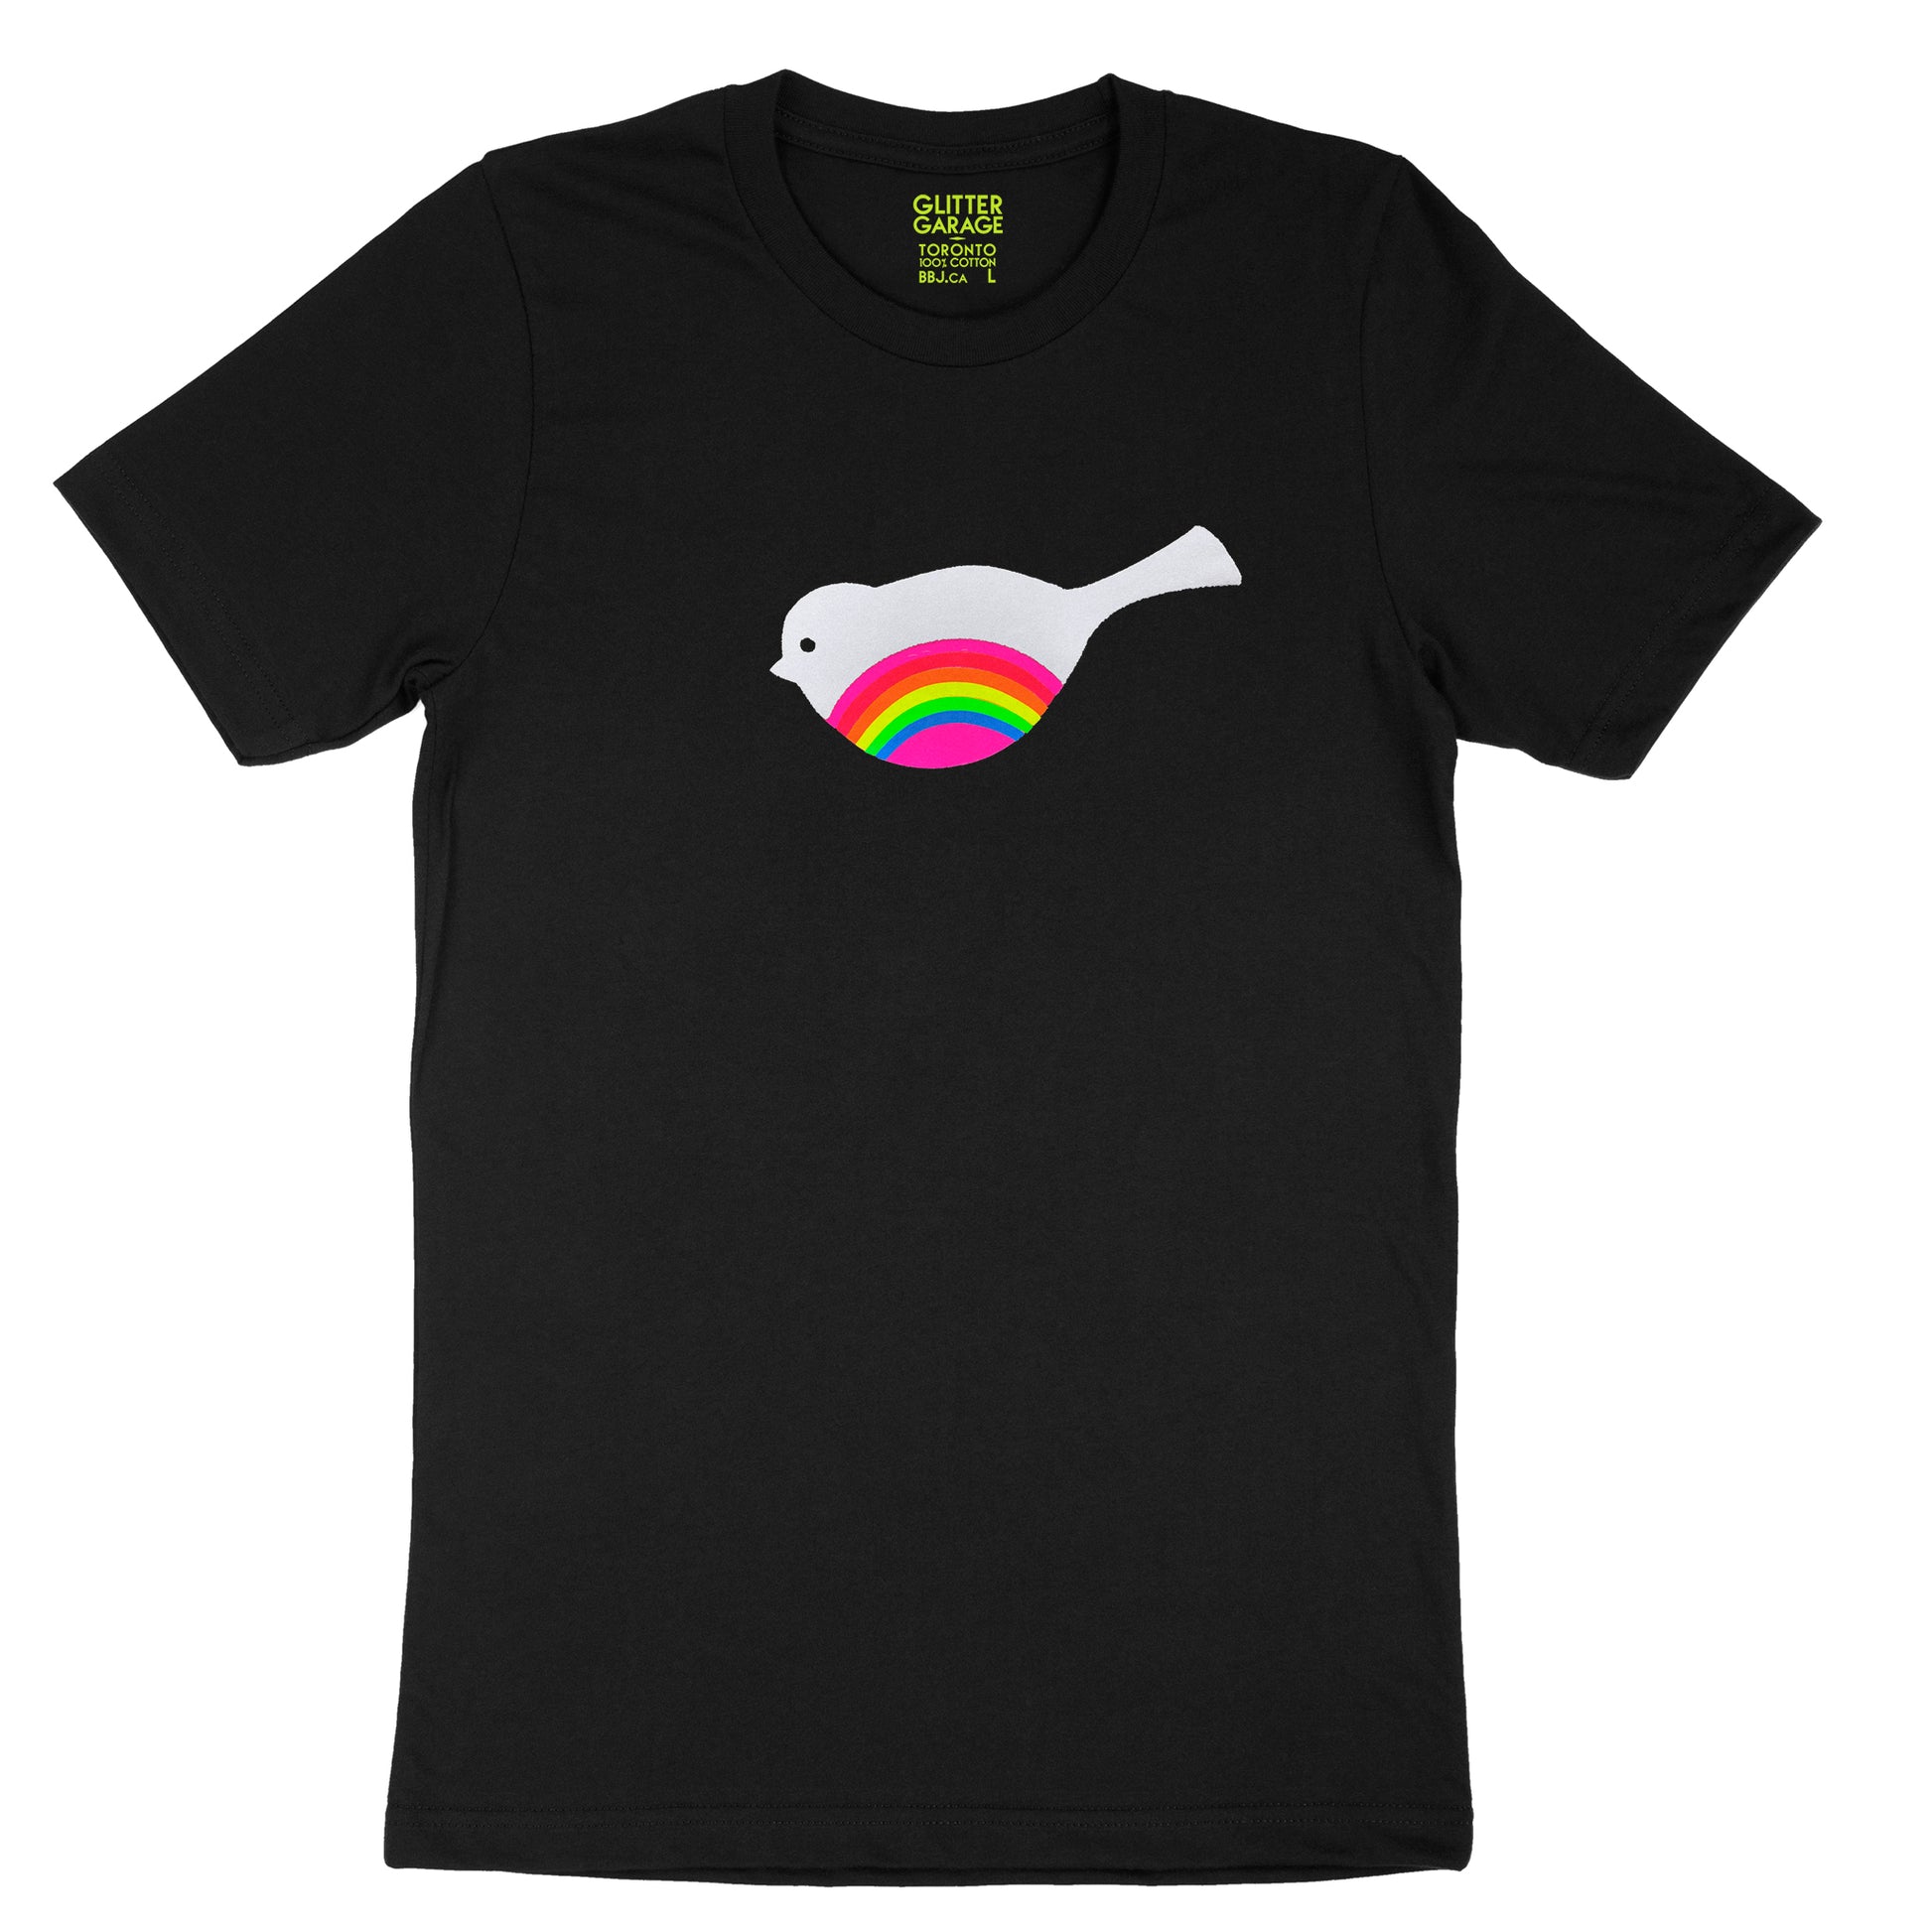 fuzzy white bird with neon rainbow striped belly on black unisex tee by BBJ / Glitter Garage